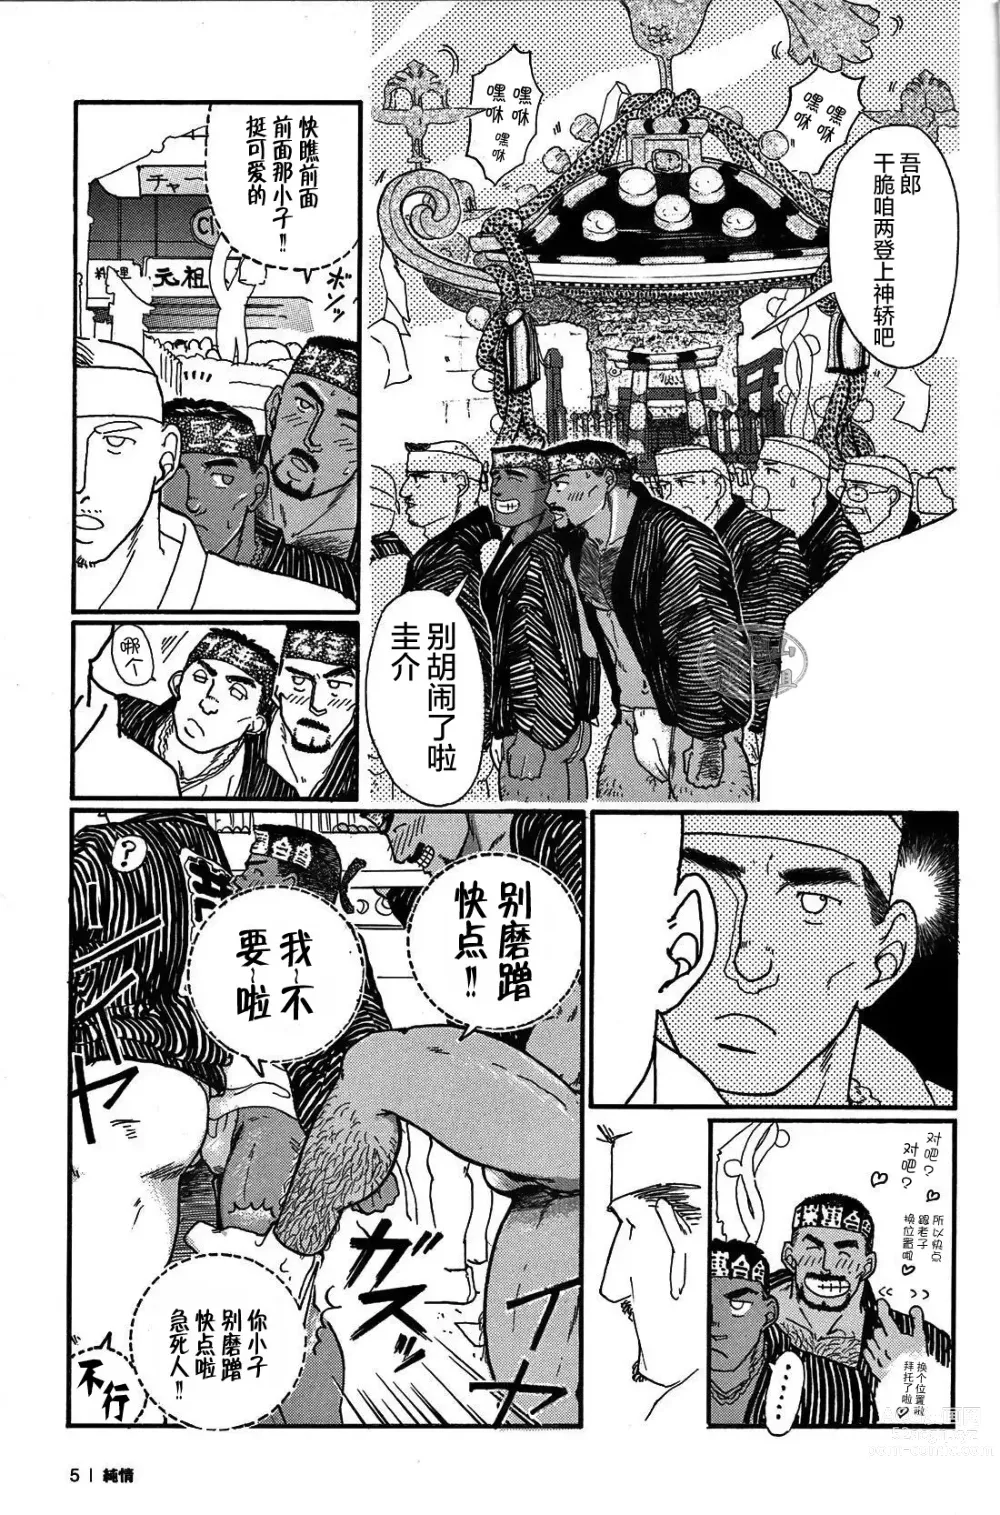 Page 4 of manga 纯情-第一章-纯情!!